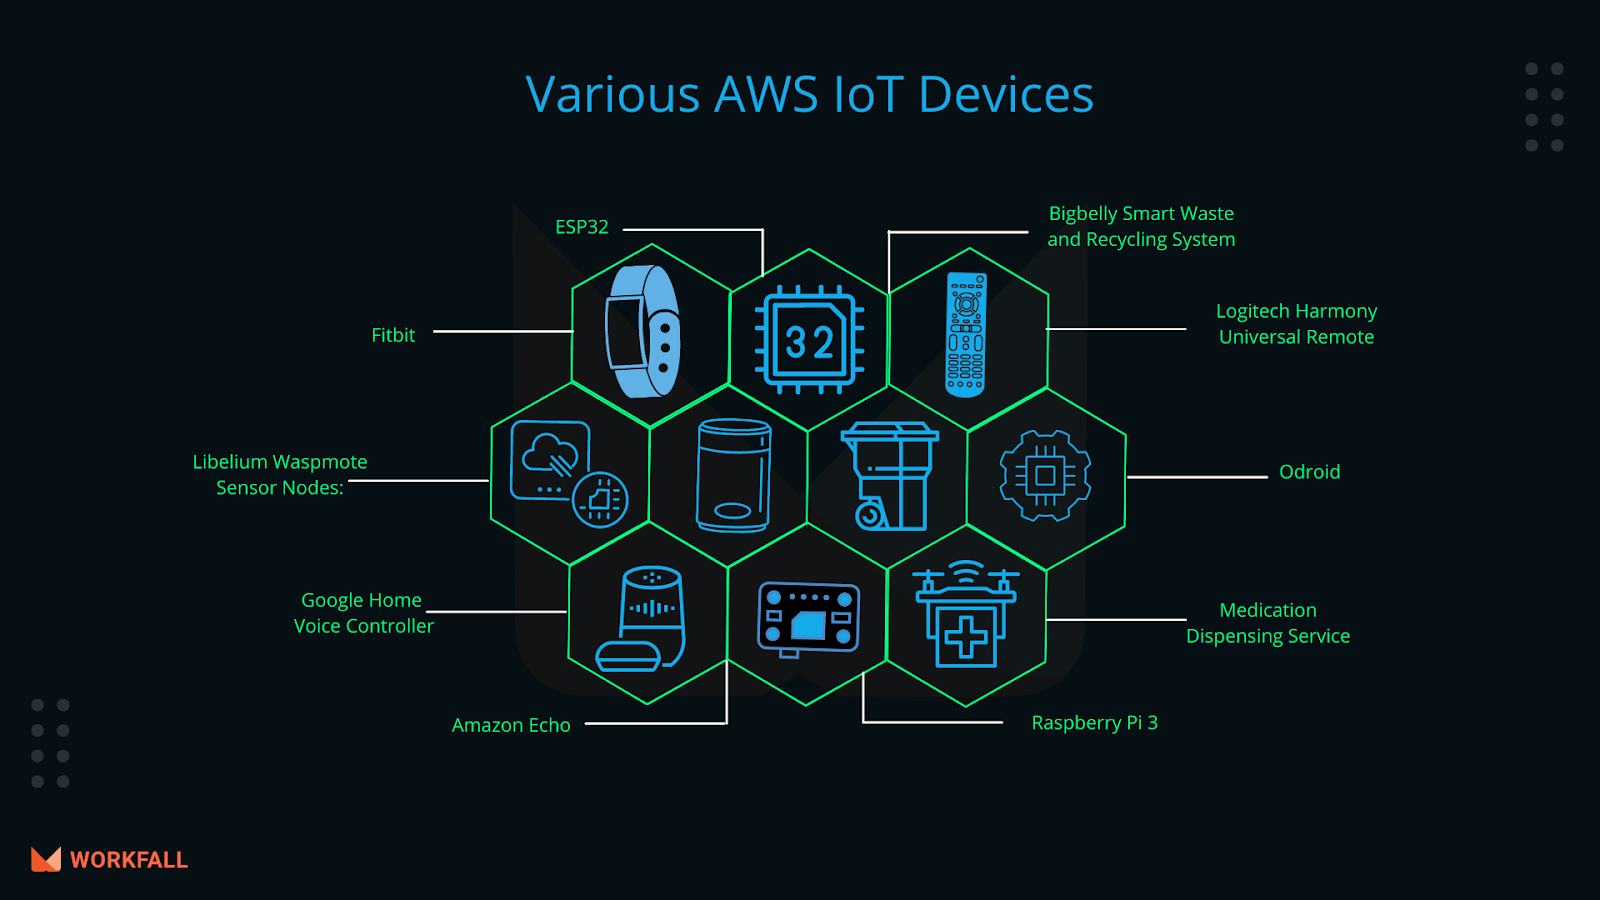 AWS IoT devices